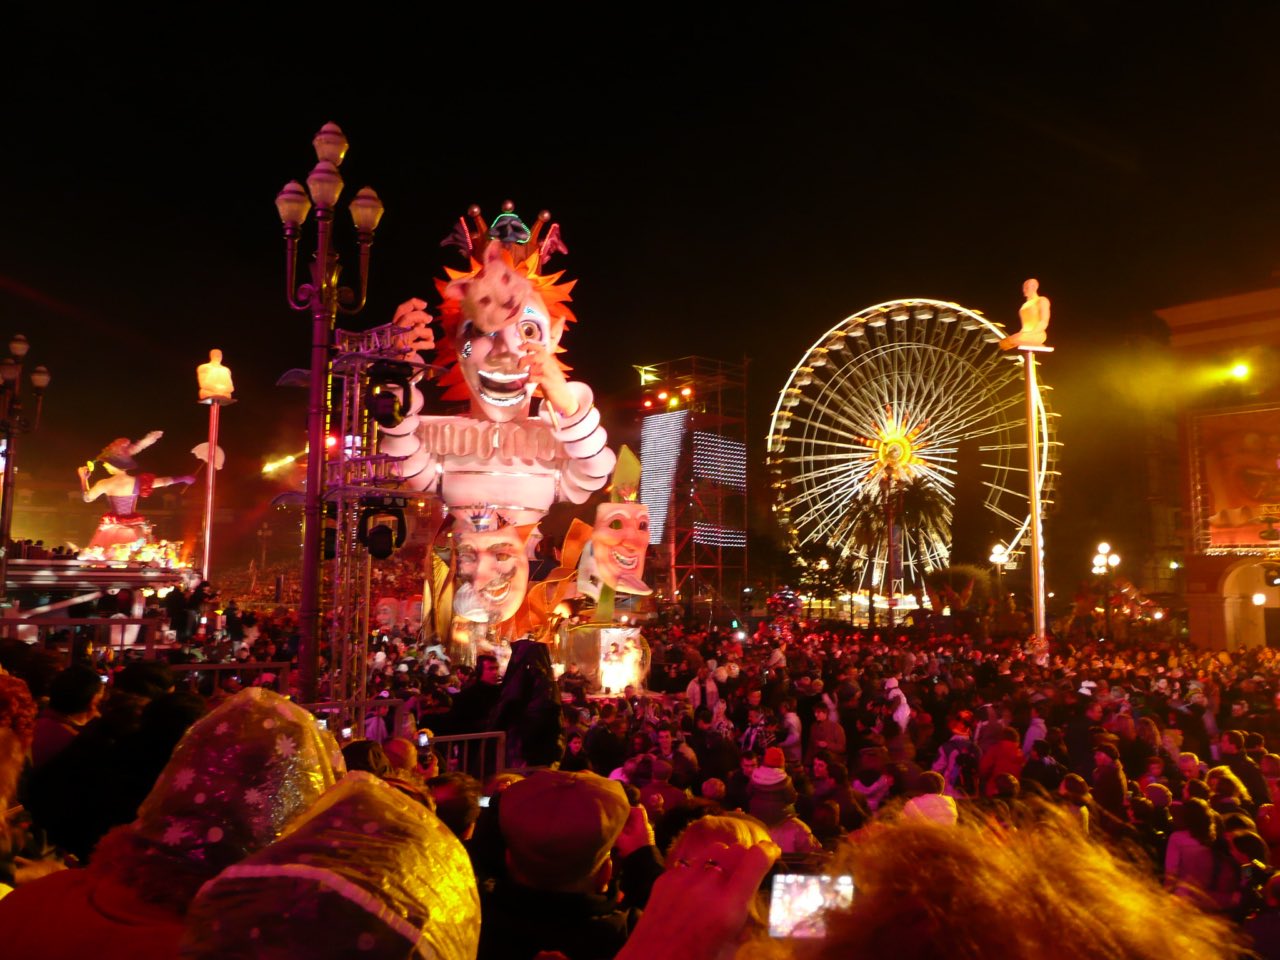 Nice Carnival Illuminated masked courses